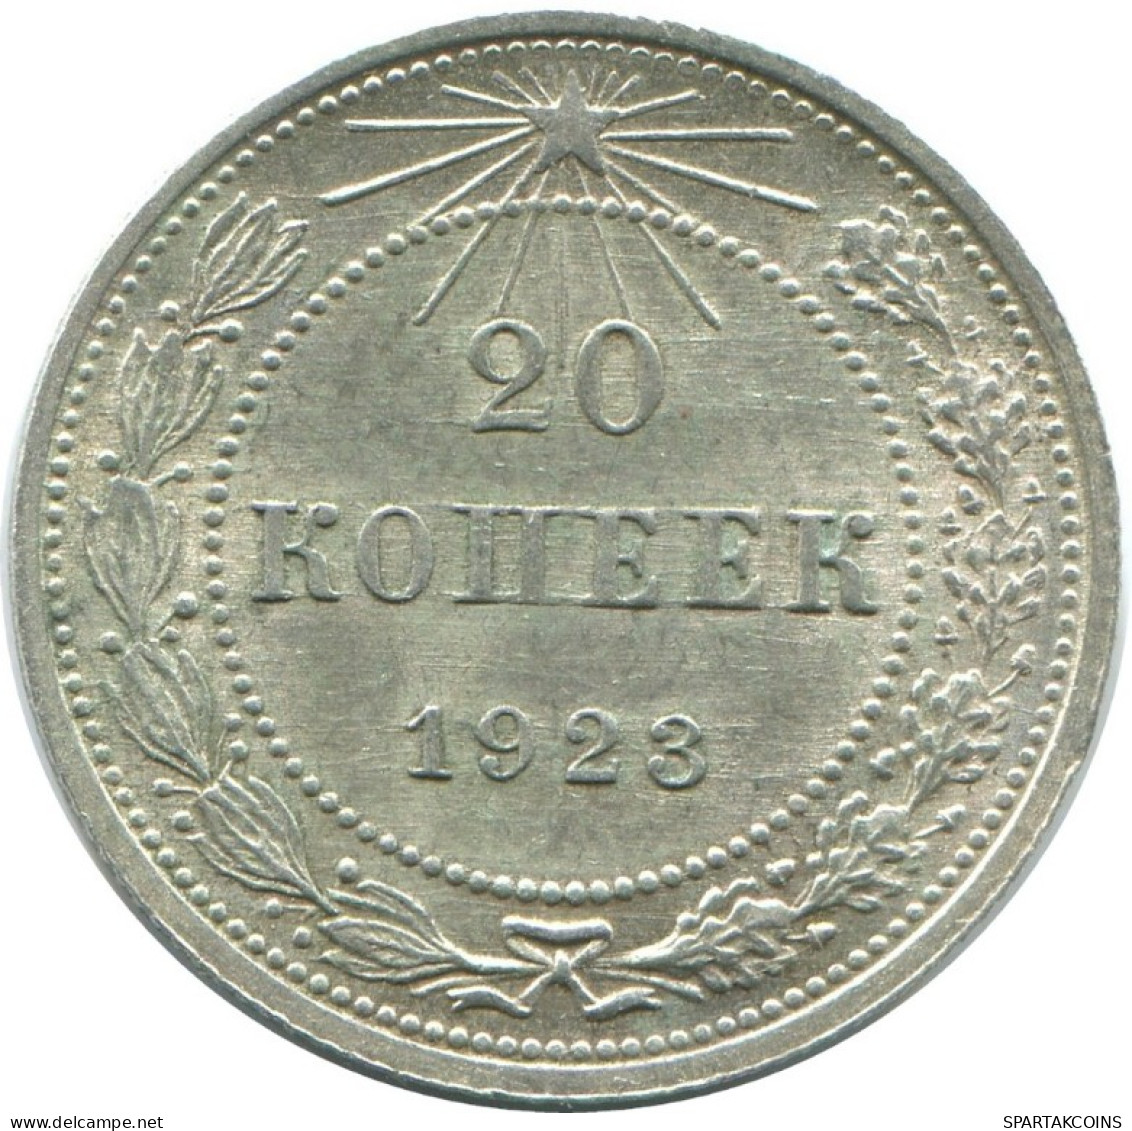 20 KOPEKS 1923 RUSSLAND RUSSIA RSFSR SILBER Münze HIGH GRADE #AF687.D.A - Russia